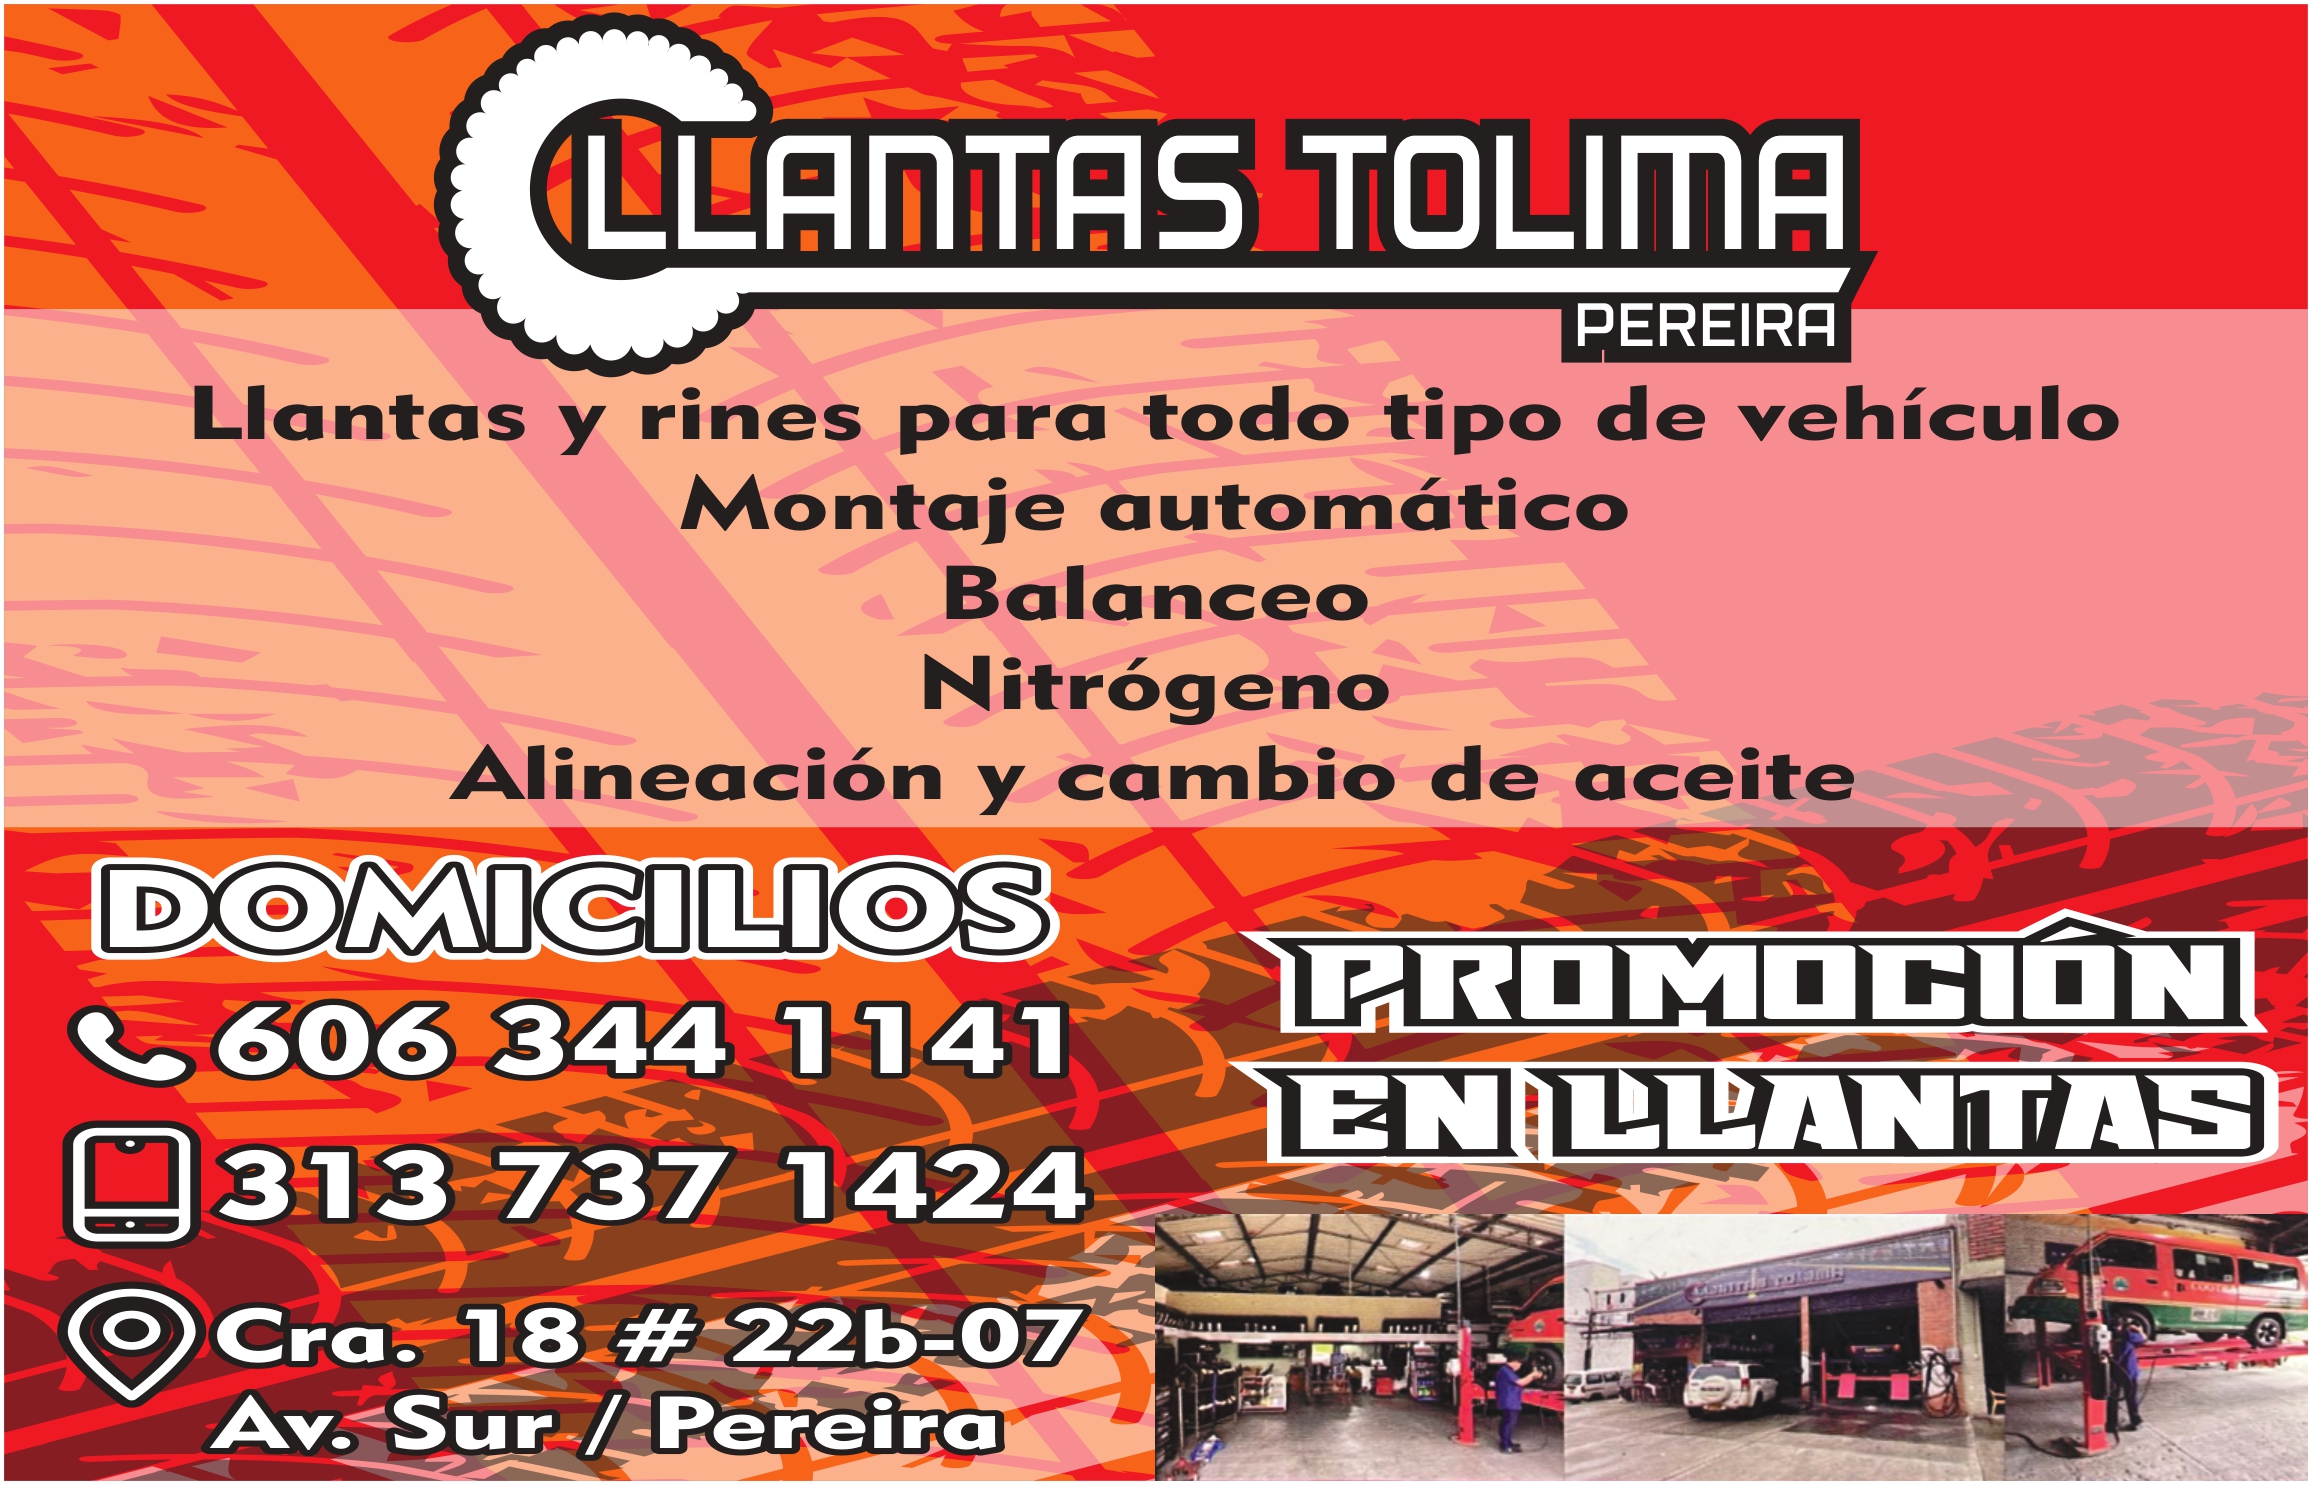 Llantas Tolima